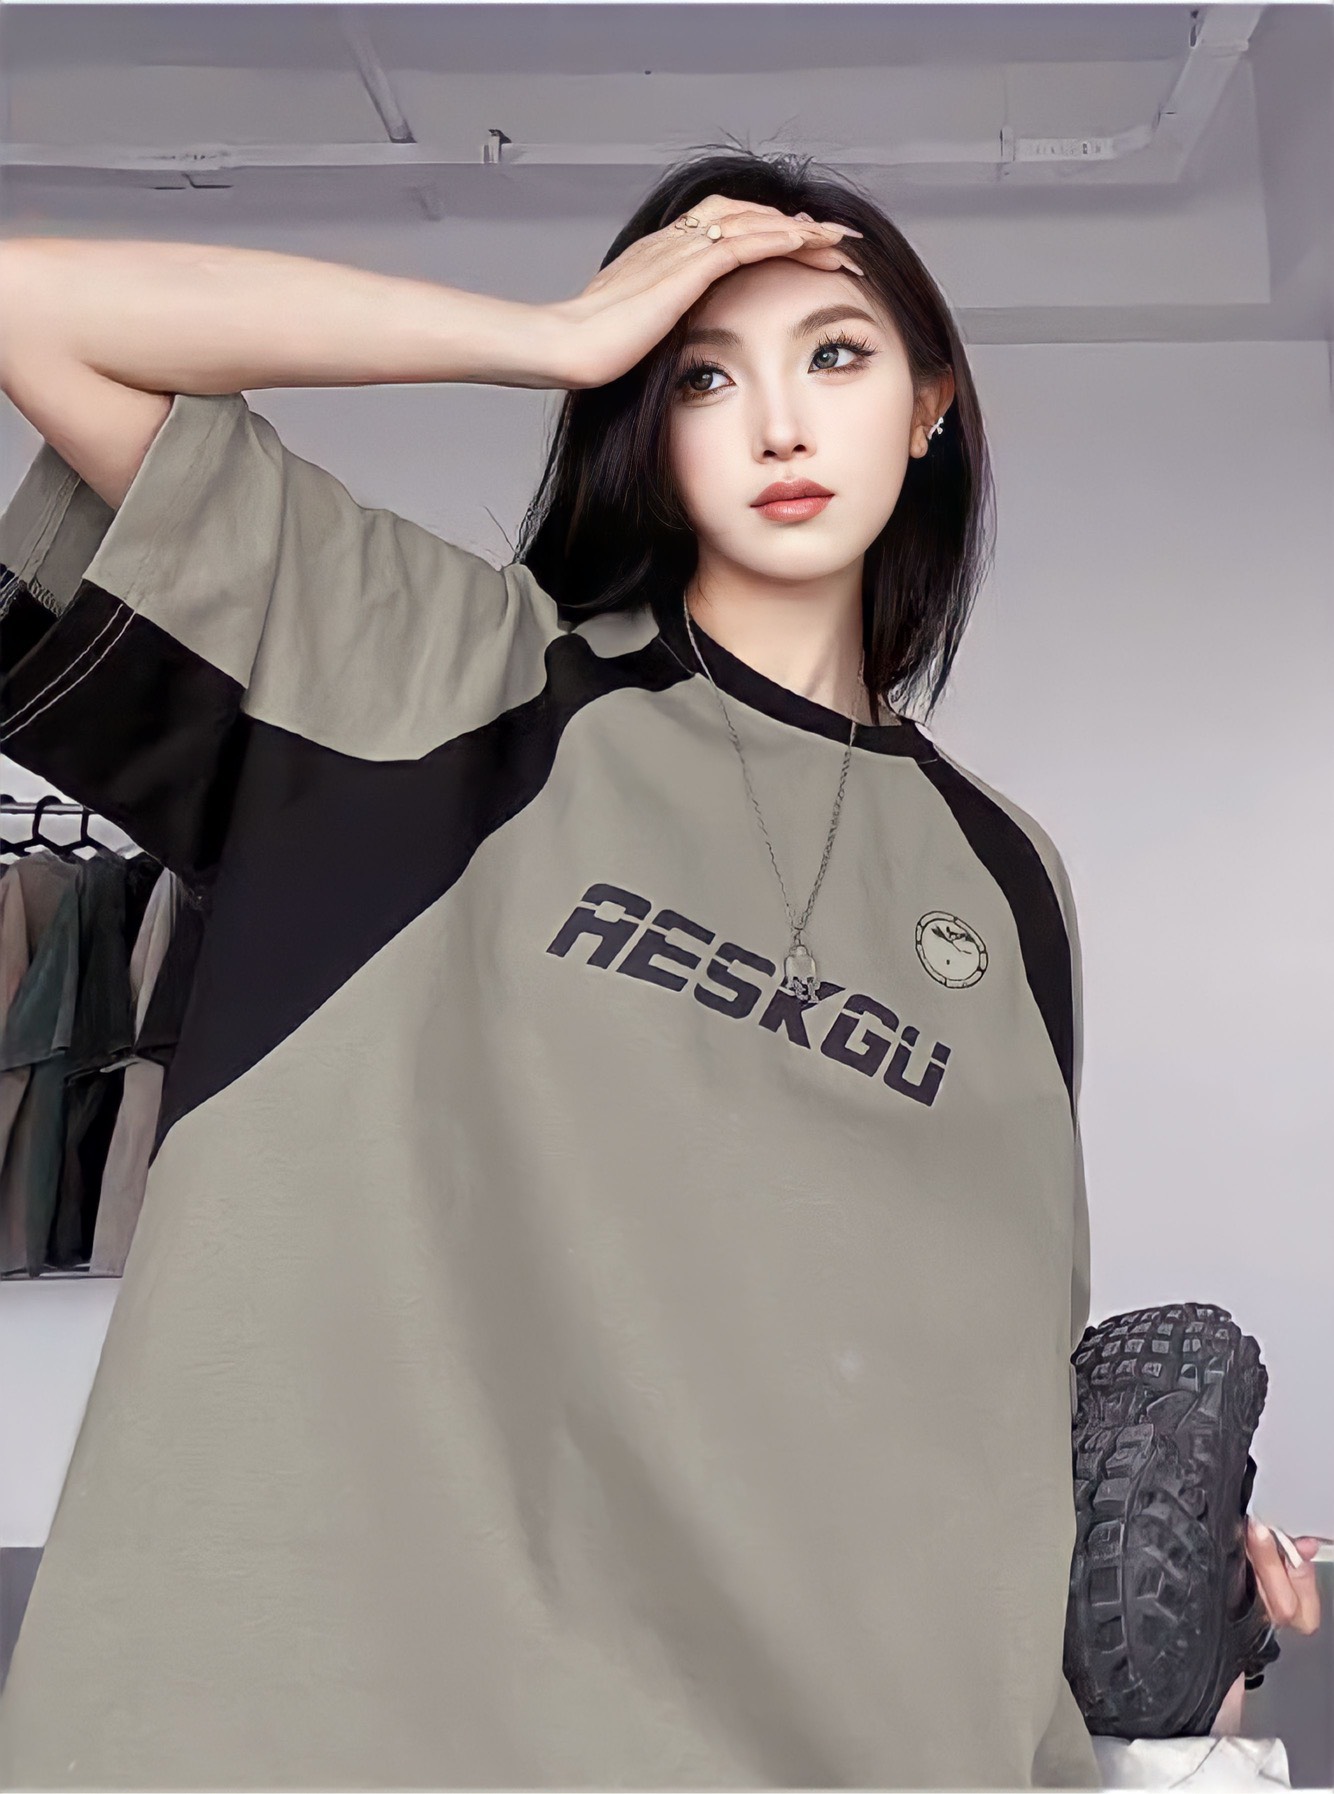 Áo phông nam nữ form rộng 2N Unisex blokecore Aeskgu phối màu đen/hồng/nâu